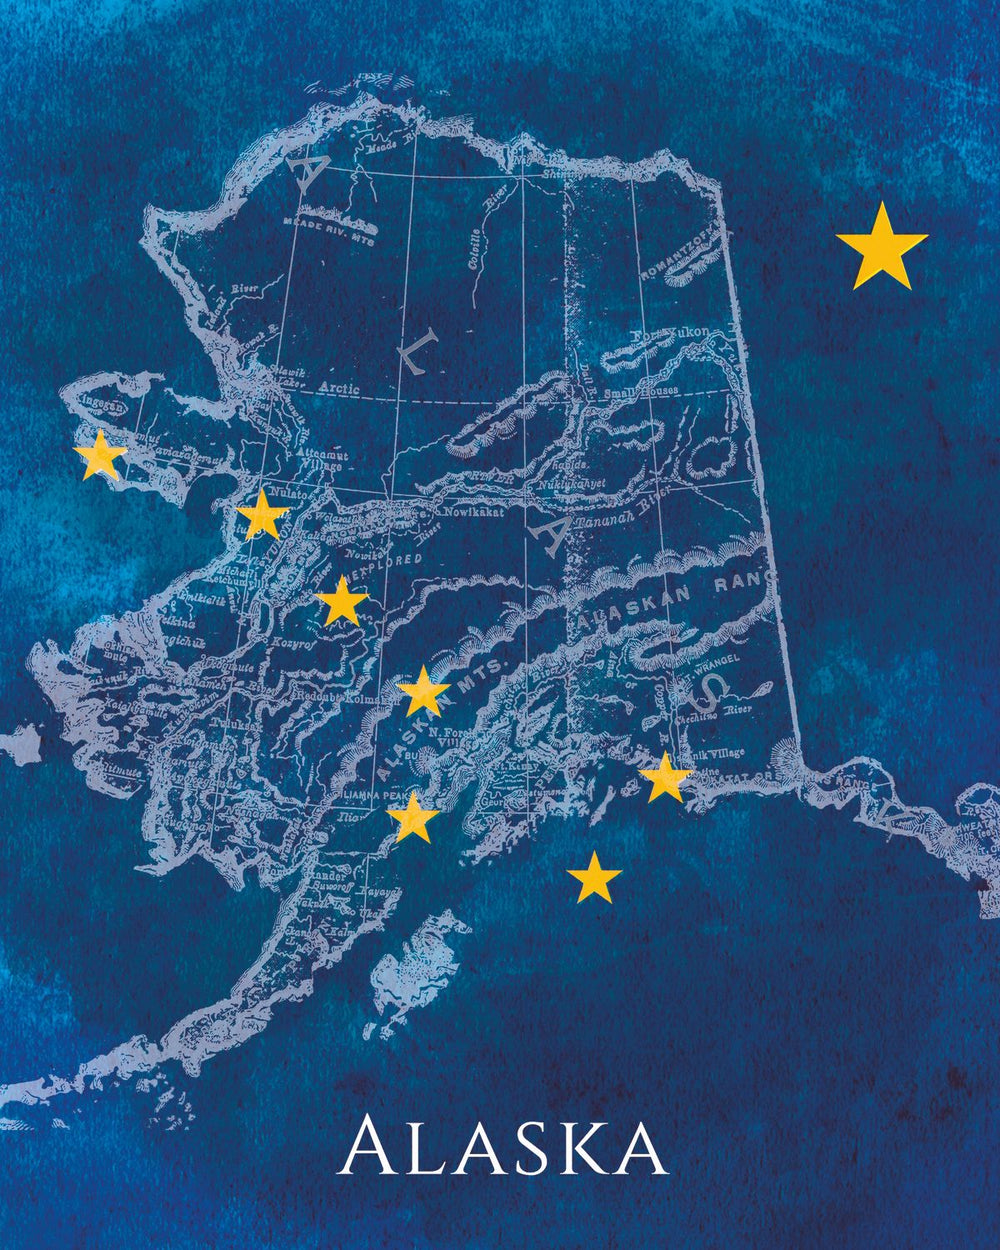 Alaska State Flag Over Map